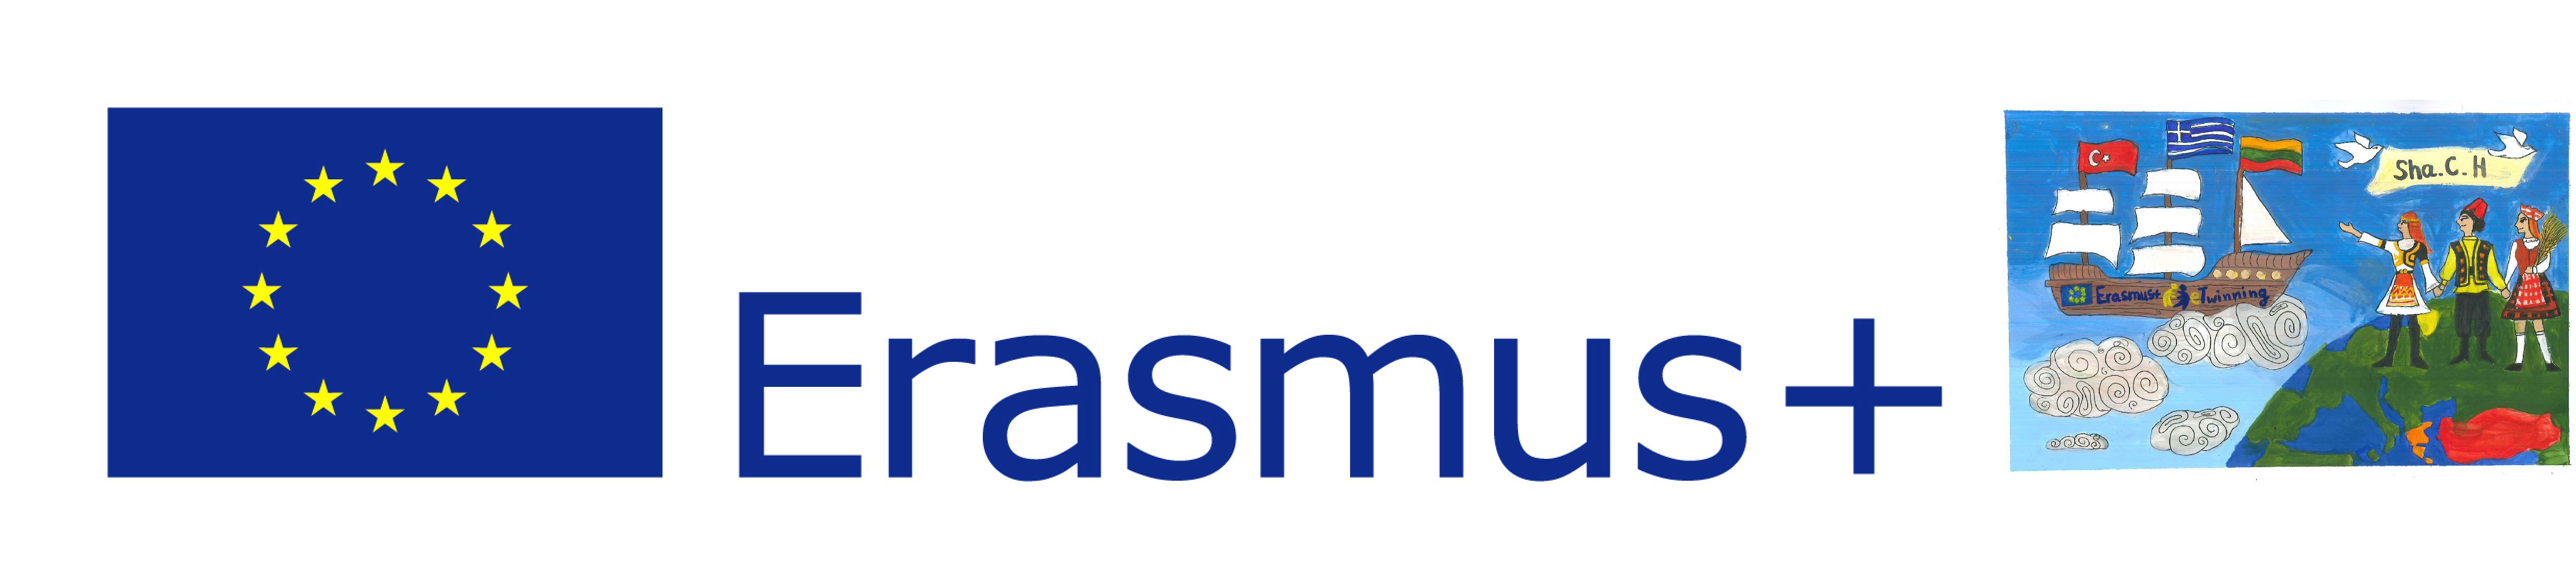 erasmus-logo-share-01